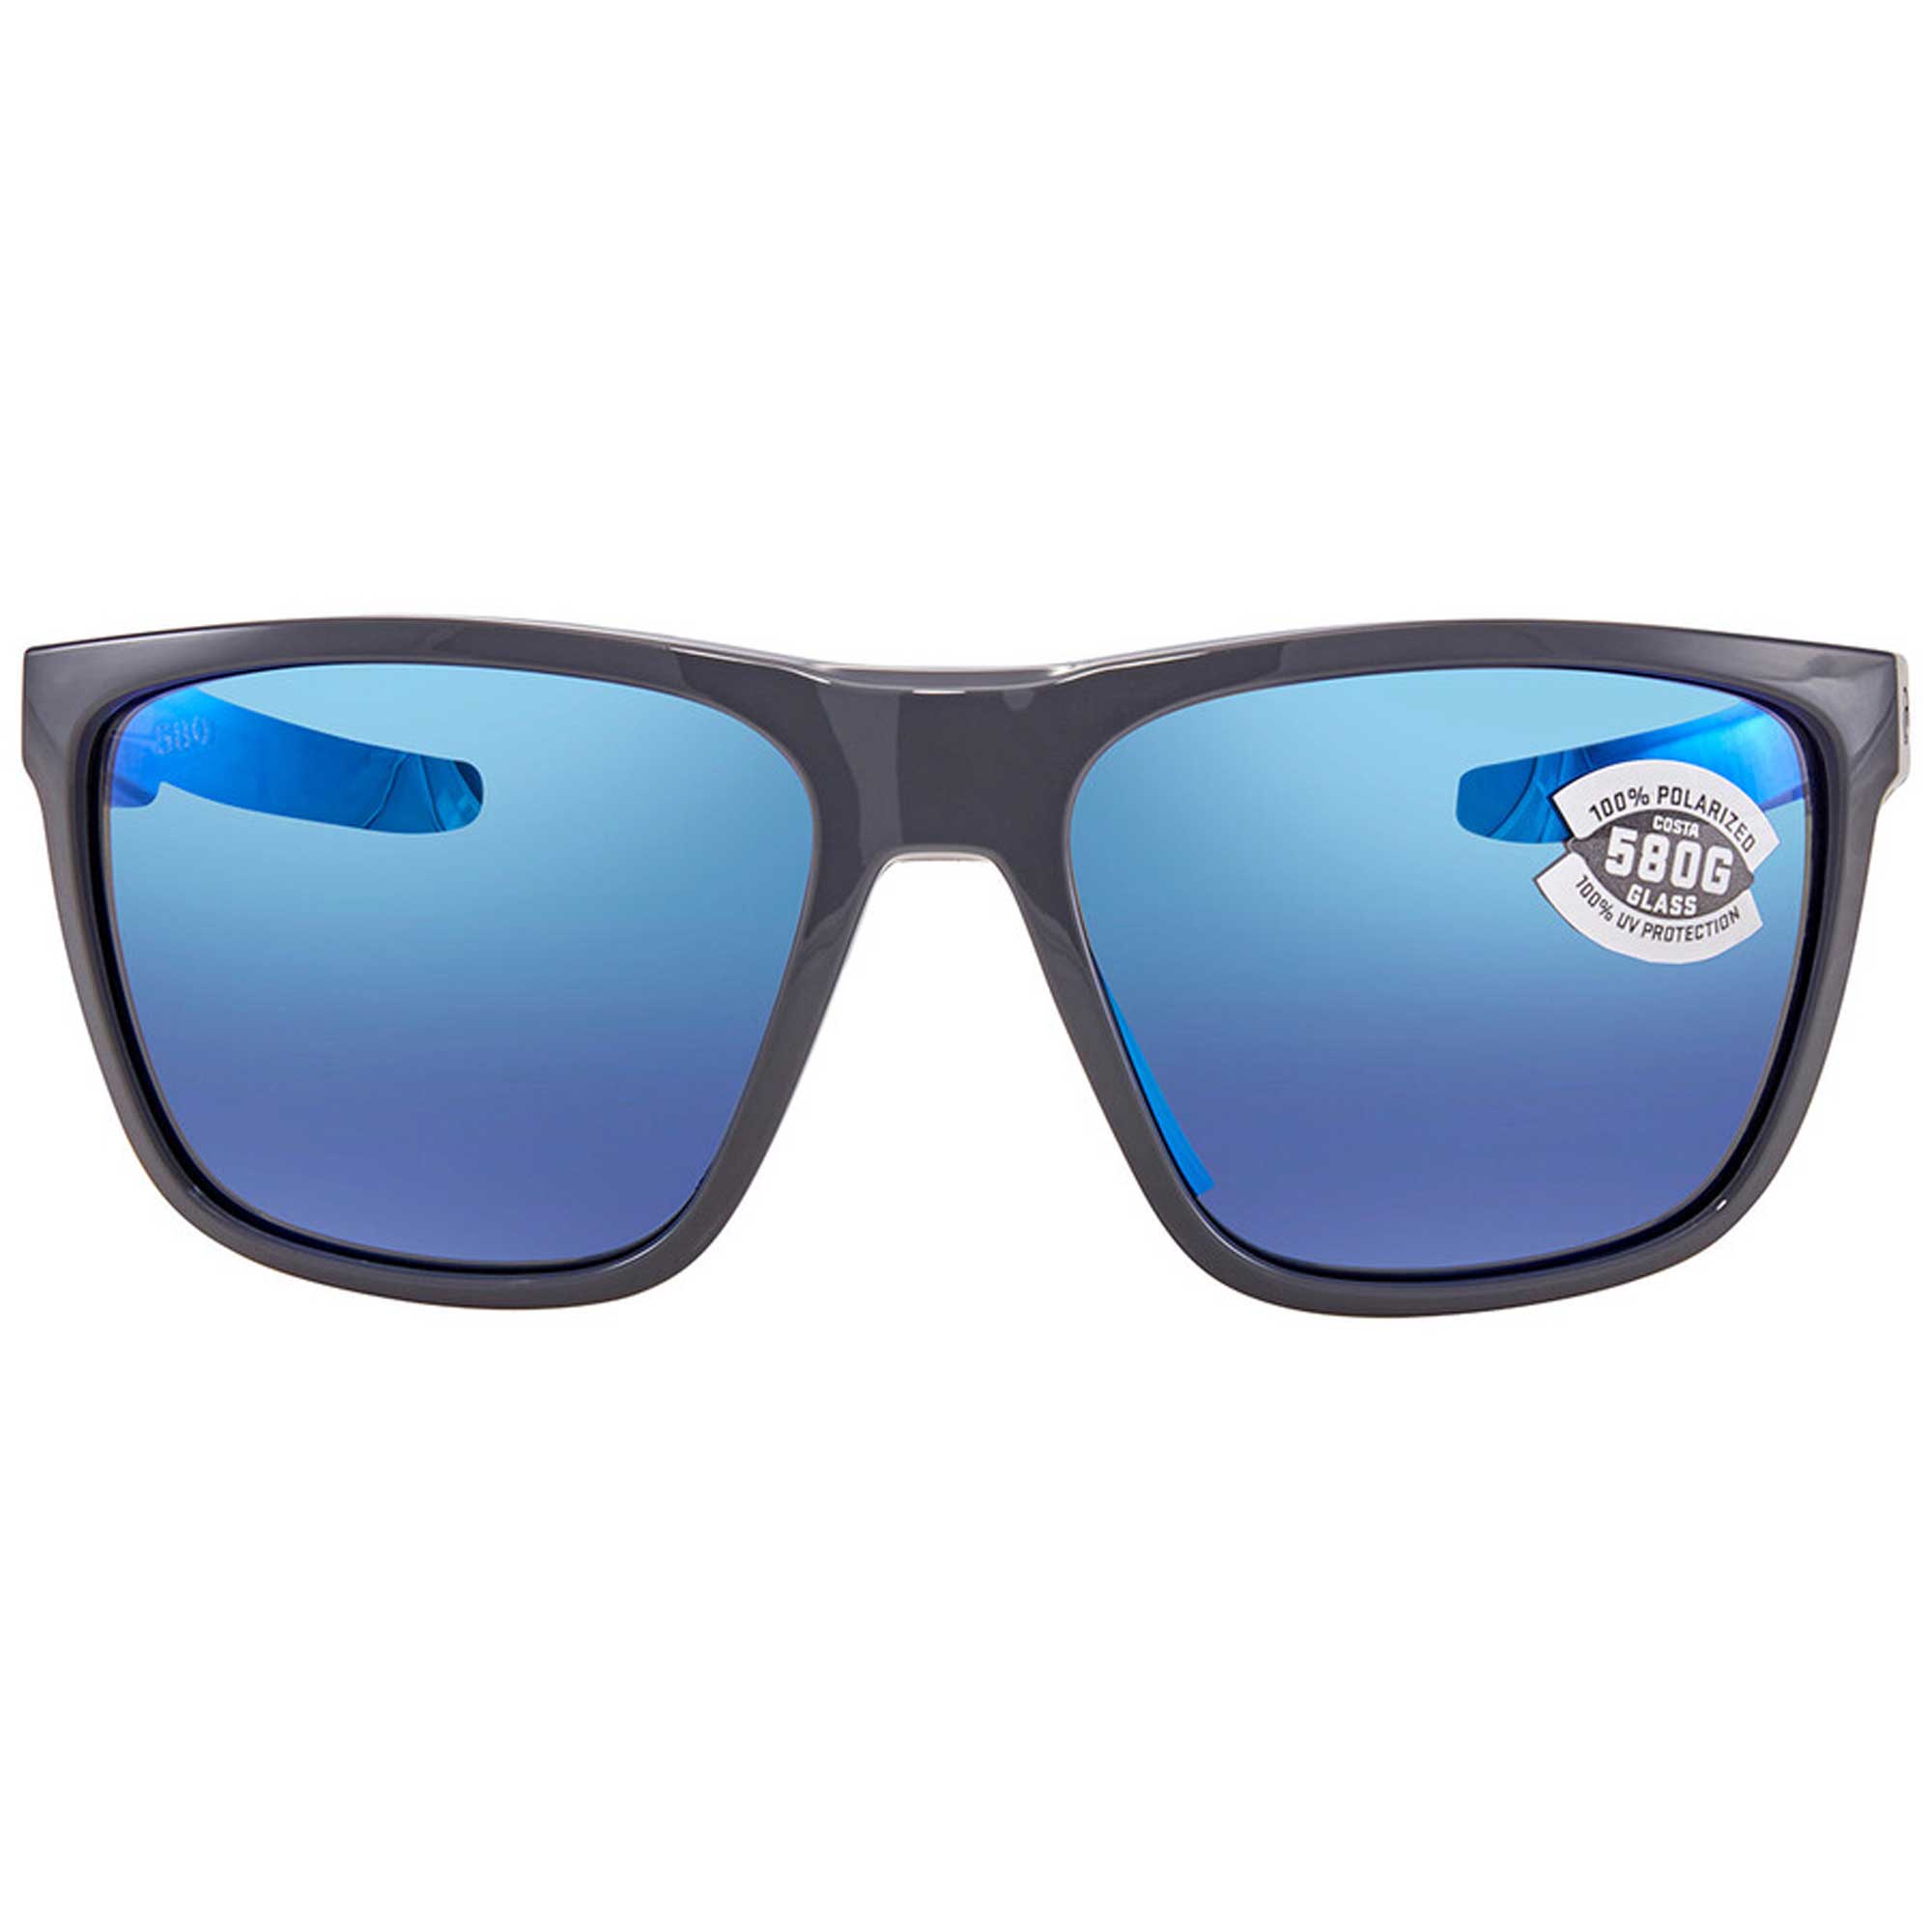 Sunglasses Costa Del Mar 06 S 9002 900233 Ferg 298 Shiny Gray Blue Mirr - image 2 of 3